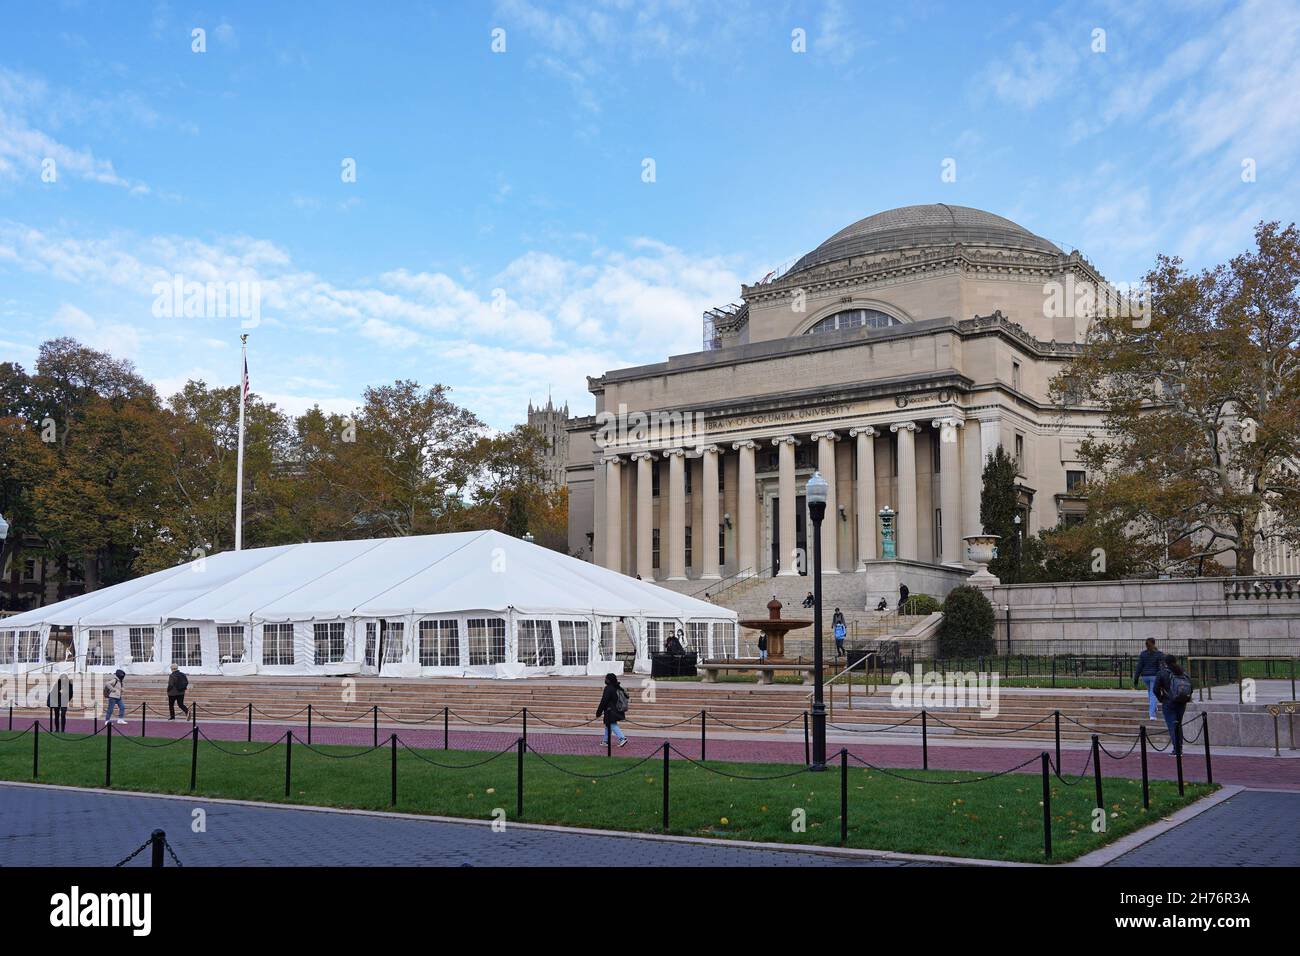 New York City, USA - 15. November 2021: Das Low Library Building an der Columbia University in Manhattan, mit einem Zelt davor, um soziale Distanz zu ermöglichen Stockfoto